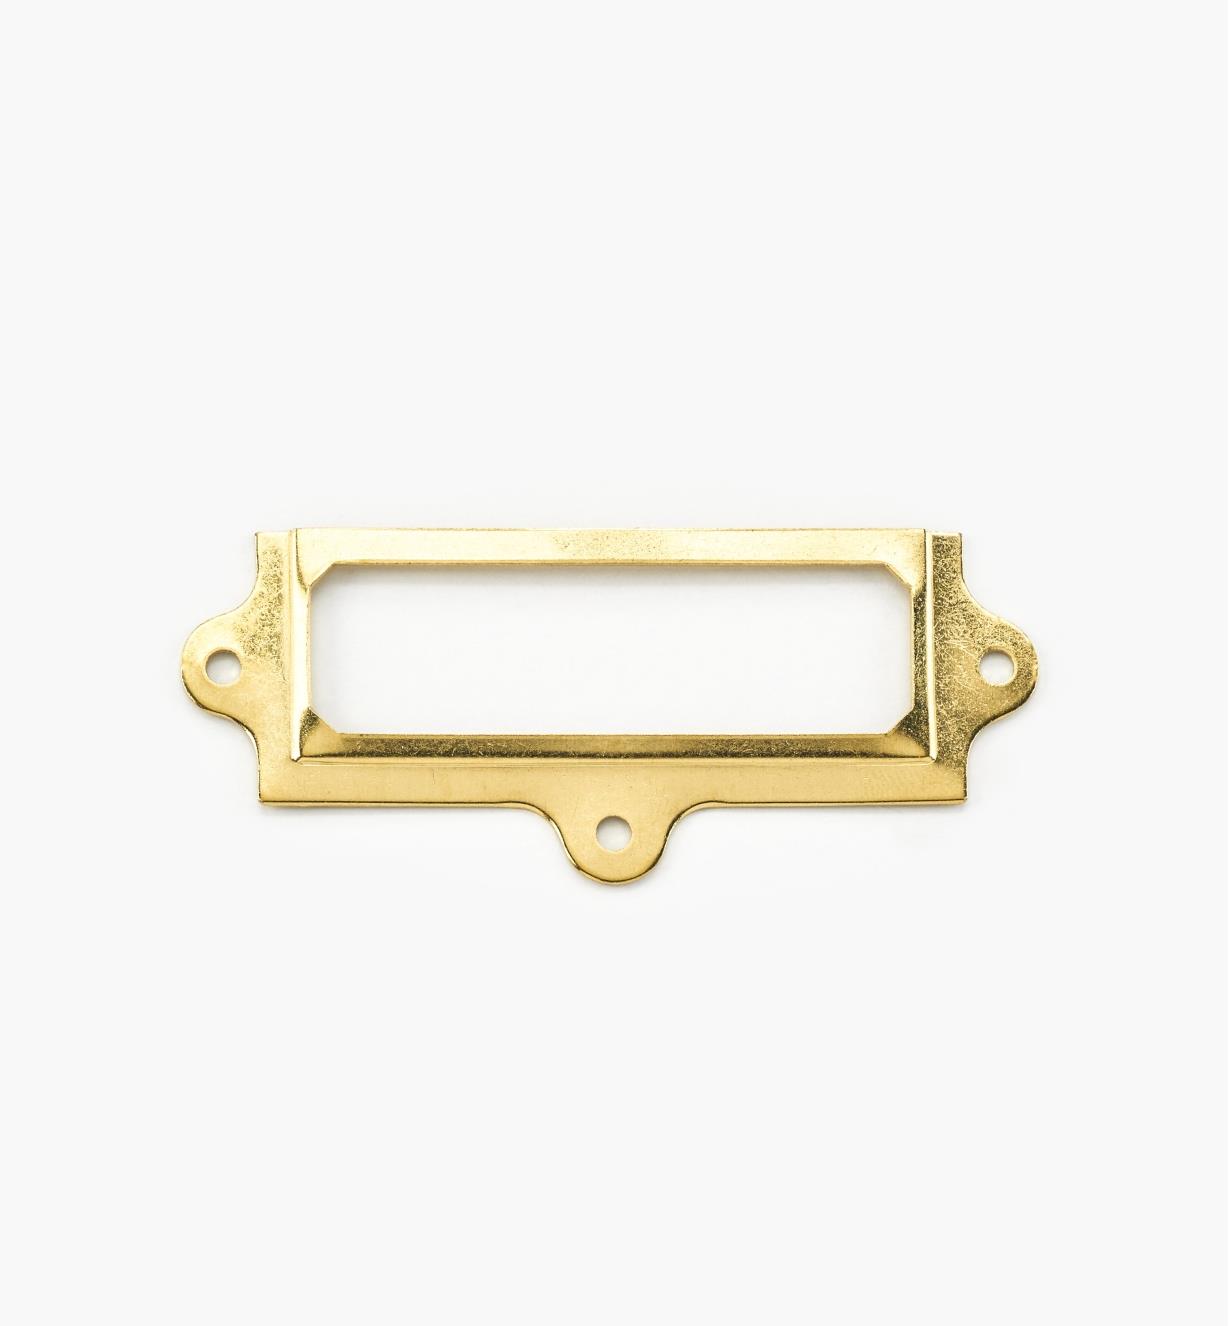 00L0701 - 3" x 1 1/8" Stamped Brass Frame